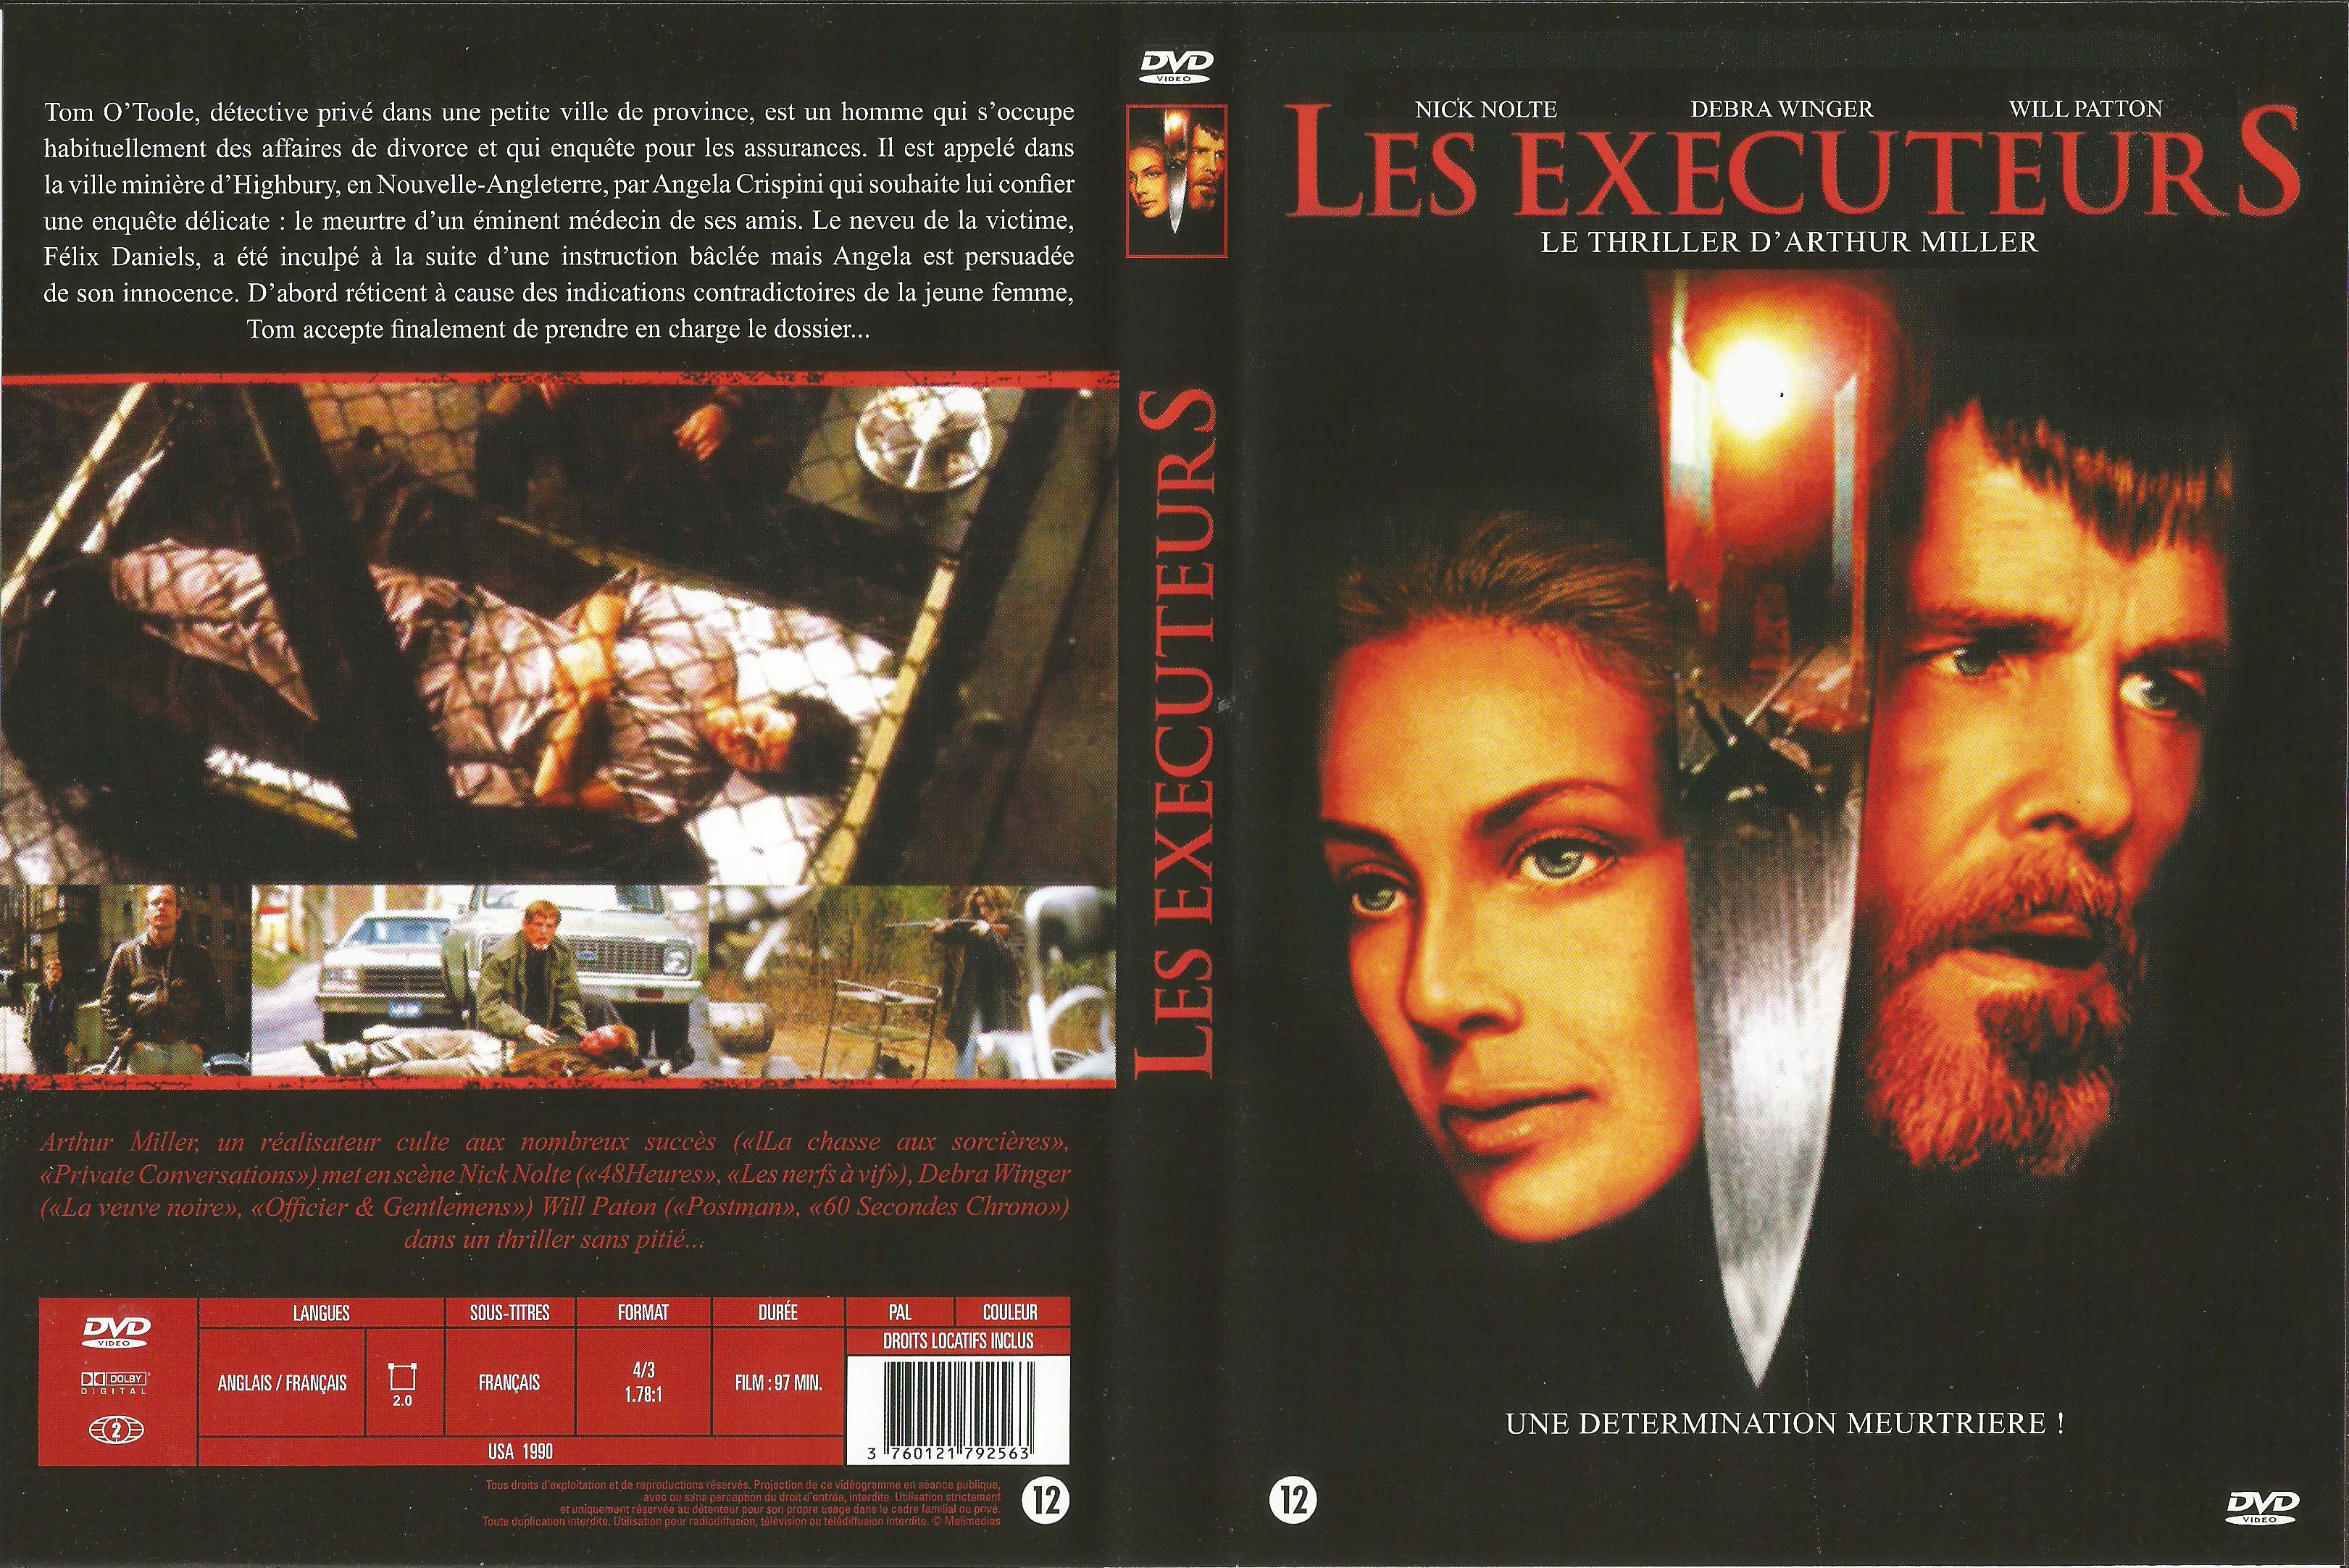 Jaquette DVD Les executeurs